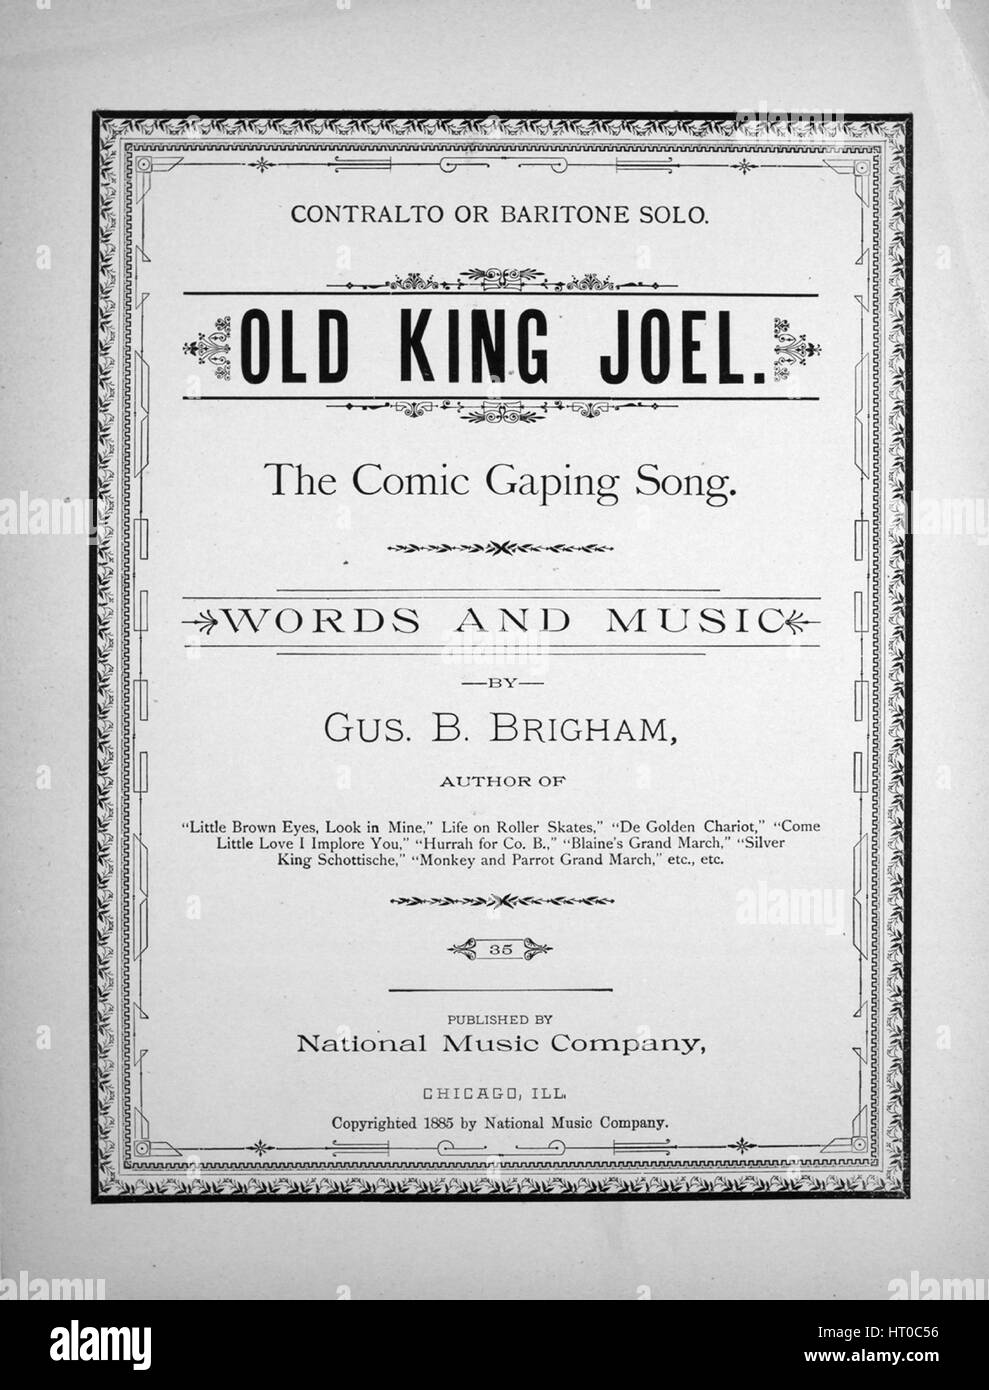 Imagen de cubierta de partituras de la canción "viejo rey Joel el cómic  canción Gaping Contralto o barítono solo", con notas de autoría original  leyendo 'Palabras y música por Gus B Brigham',